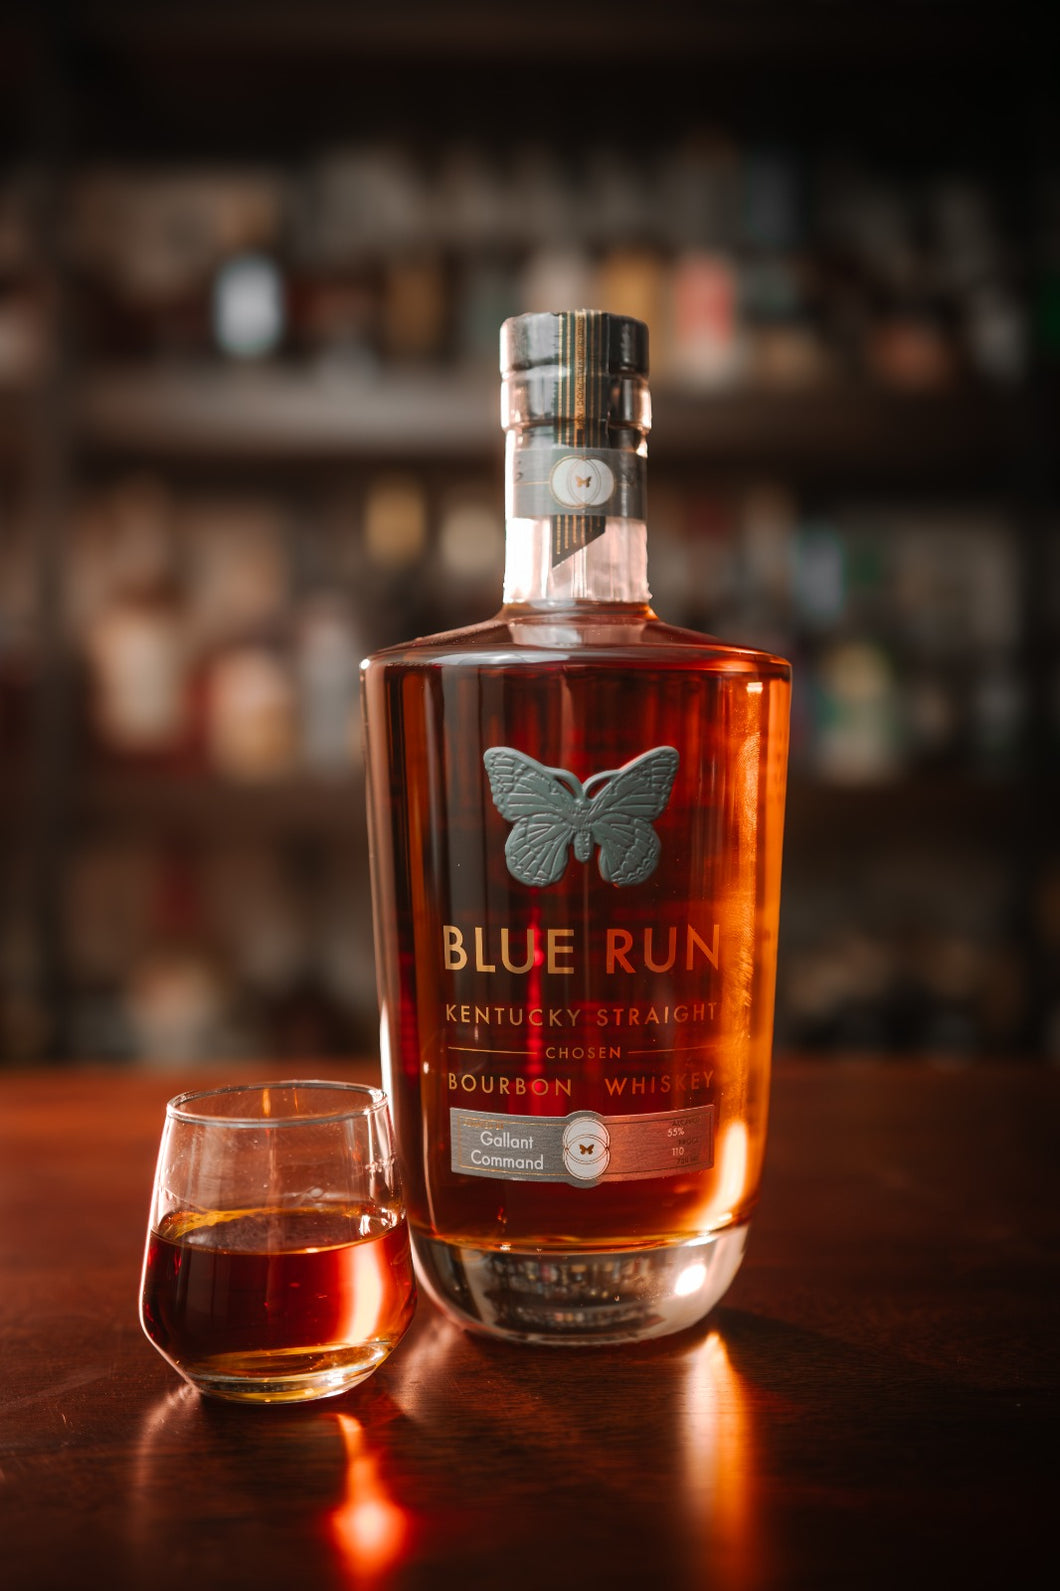 Blue Run Kentucky Straight Chosen Bourbon - Gallant Command